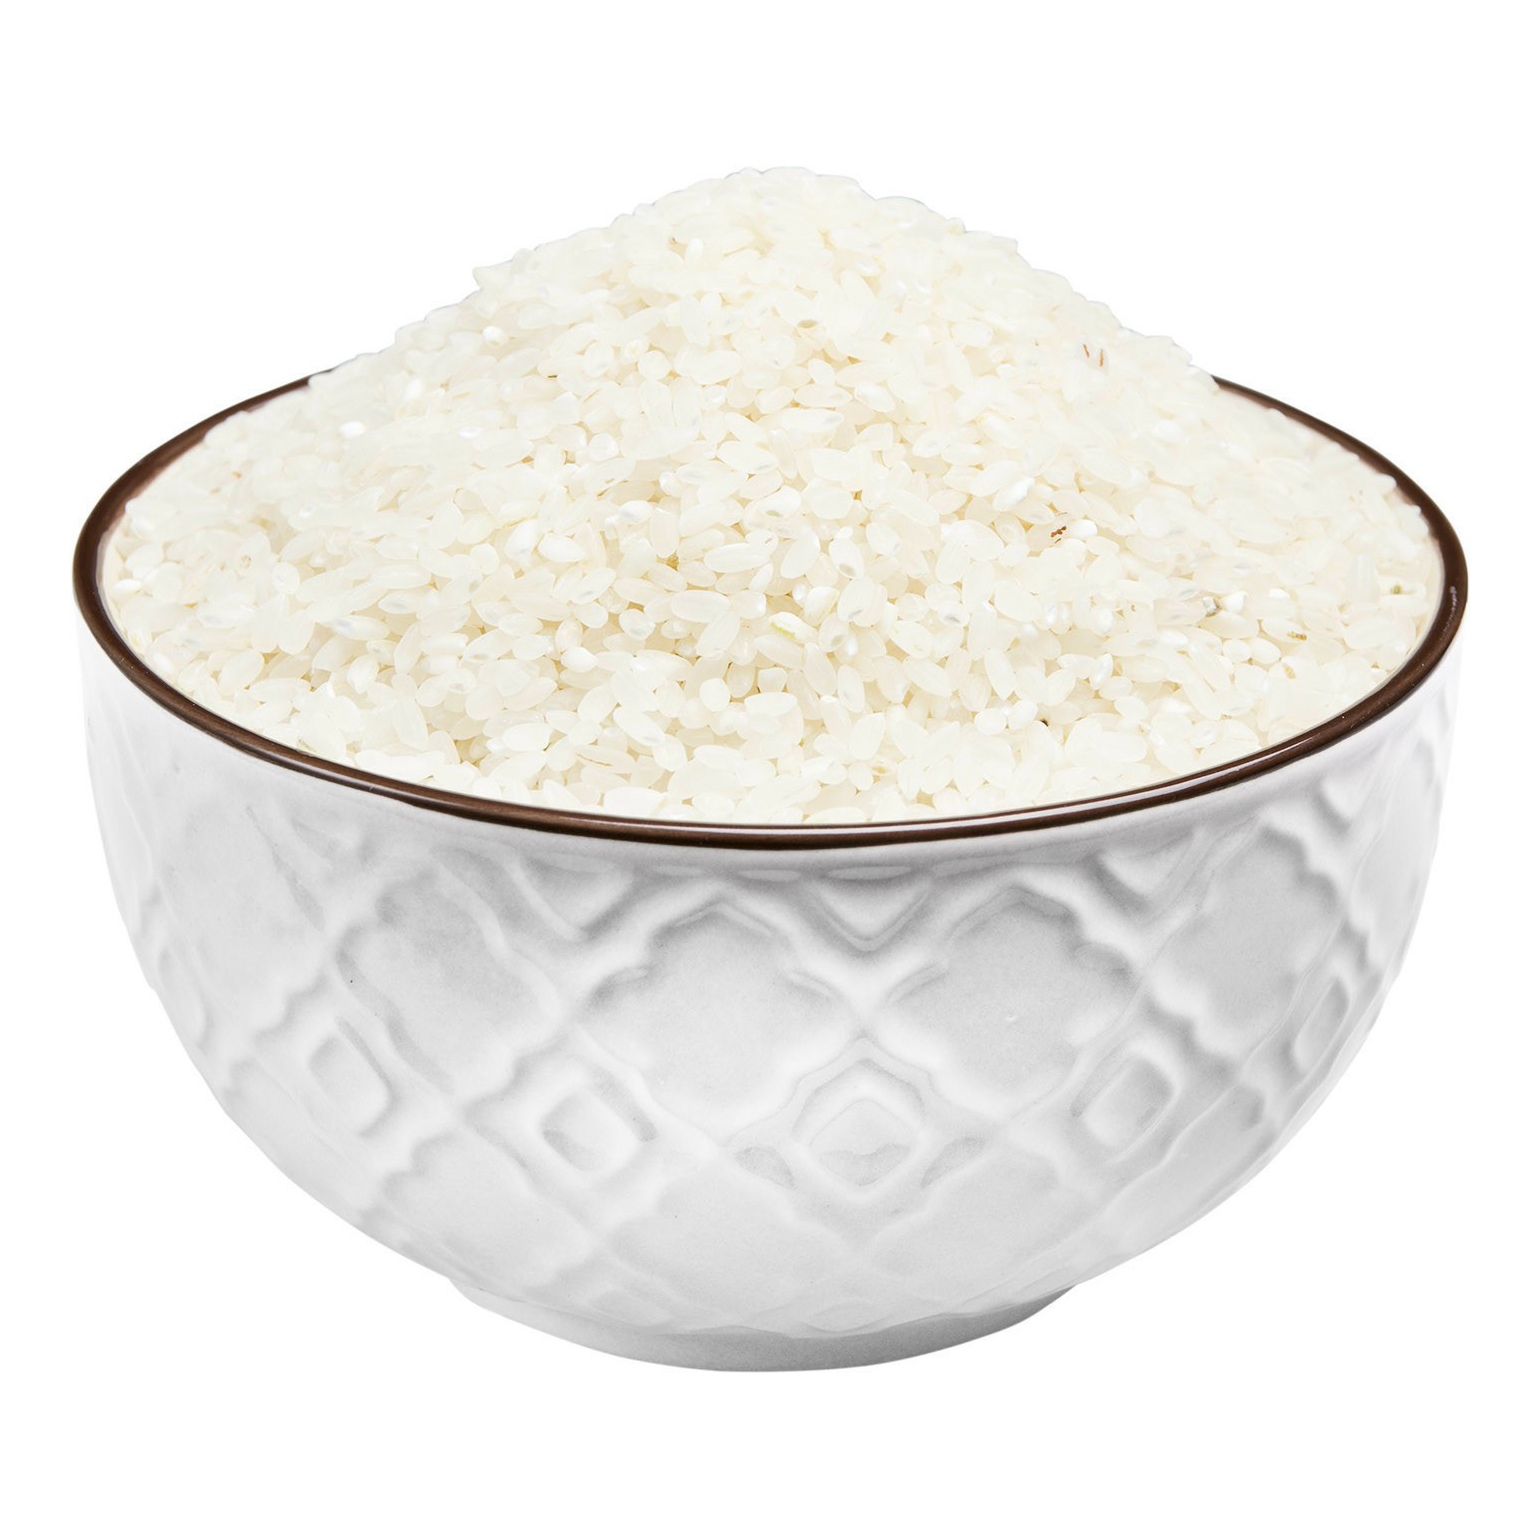 Рис круглозерный шлифованный 900 г